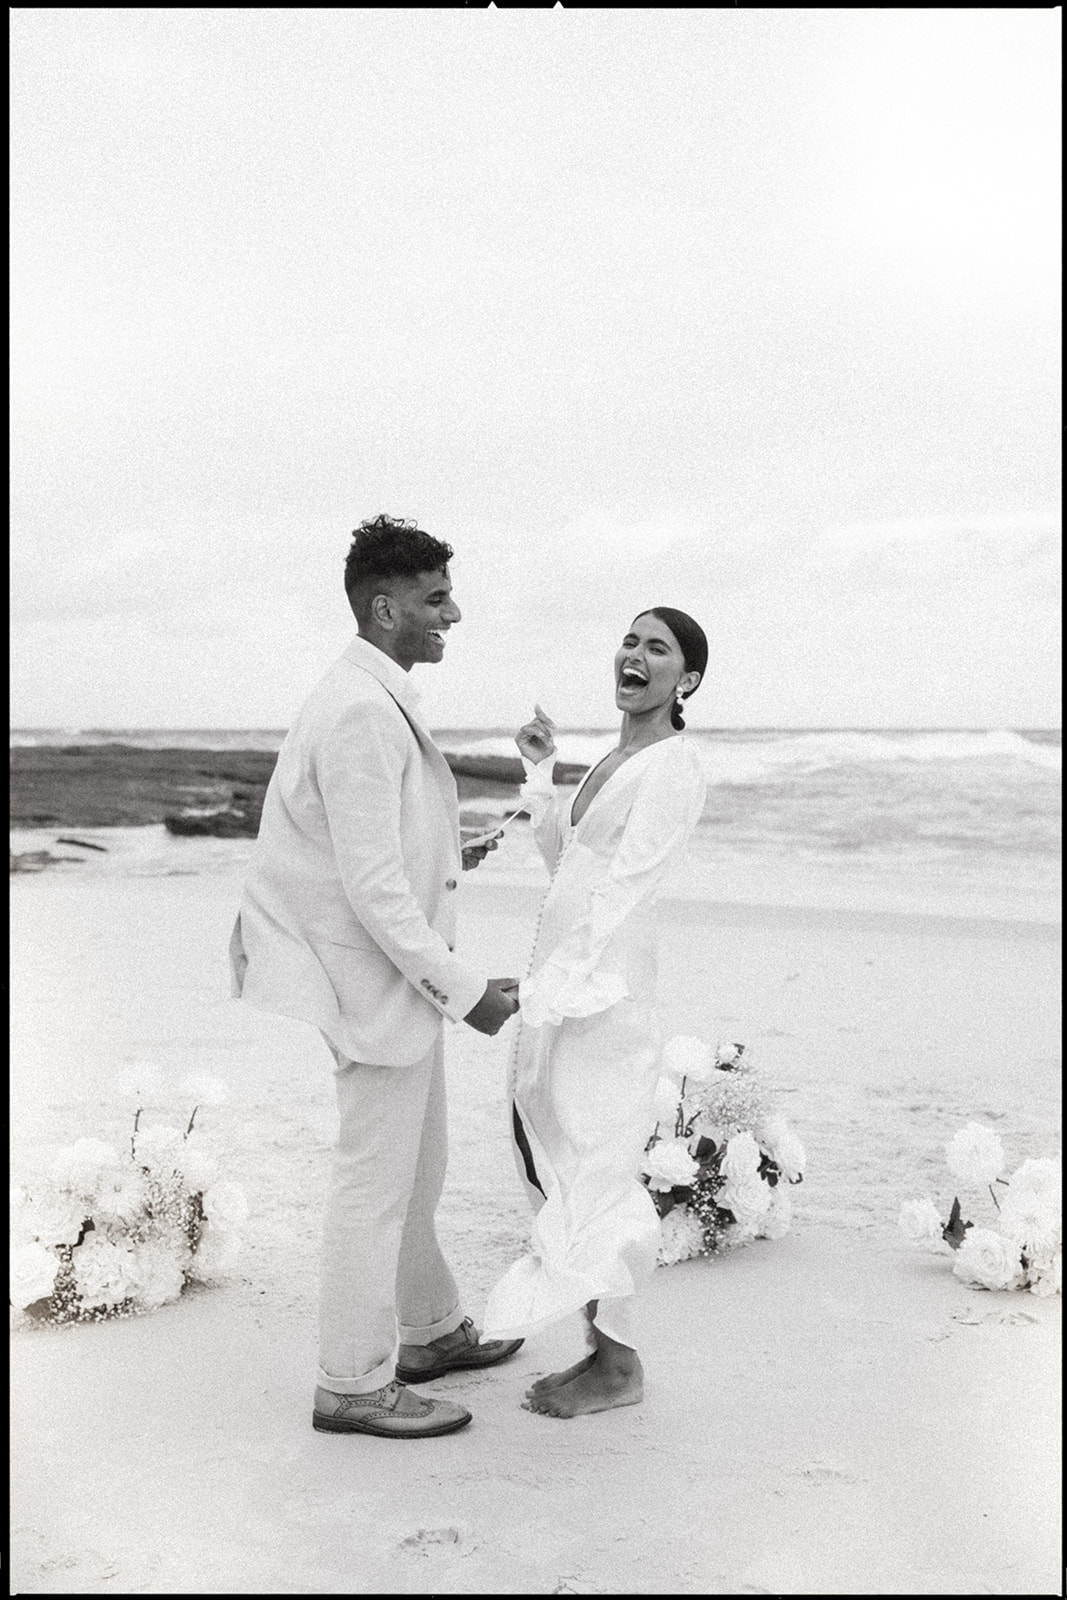 Artful wedding photography | Shona Joy wedding dress | Elegant elopement | Claire Coulthard |Wedding Photography